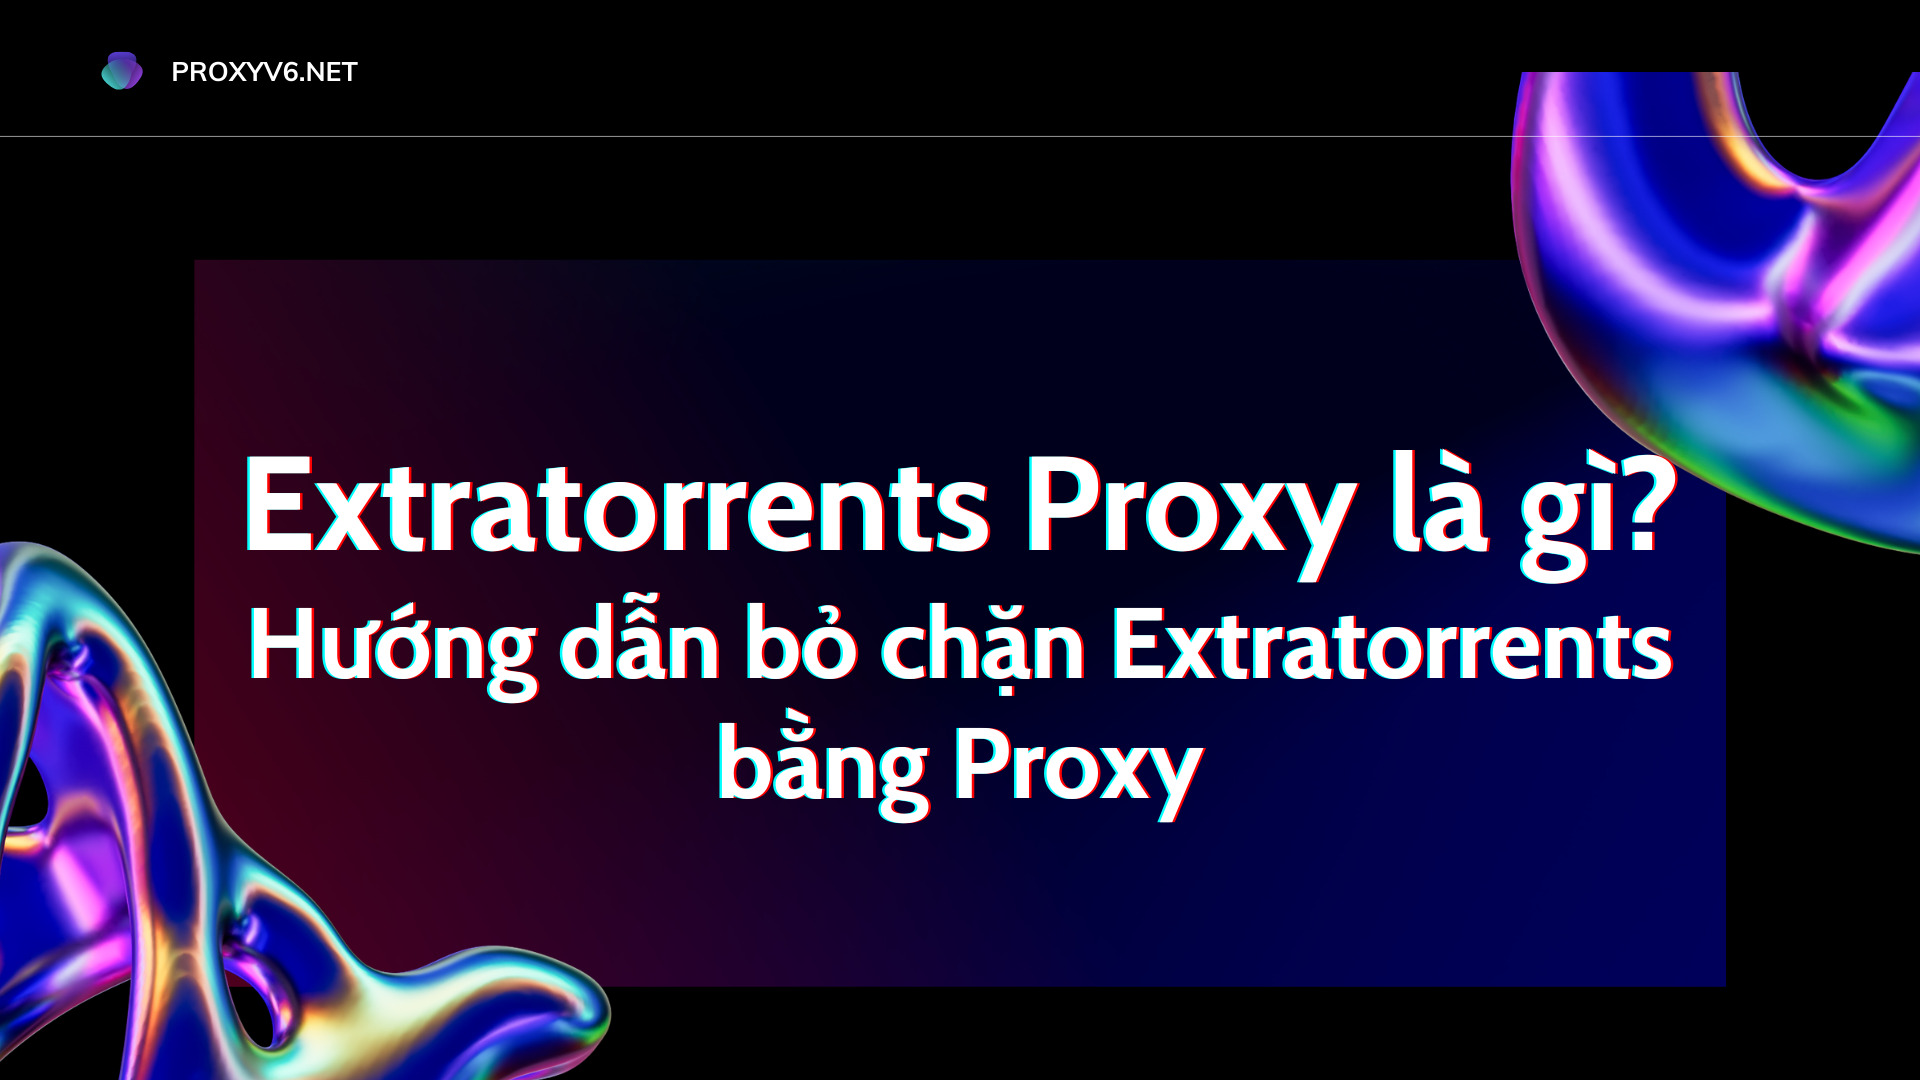 Extratorrents Proxy là gì? Hướng dẫn bỏ chặn Extratorrents bằng Proxy